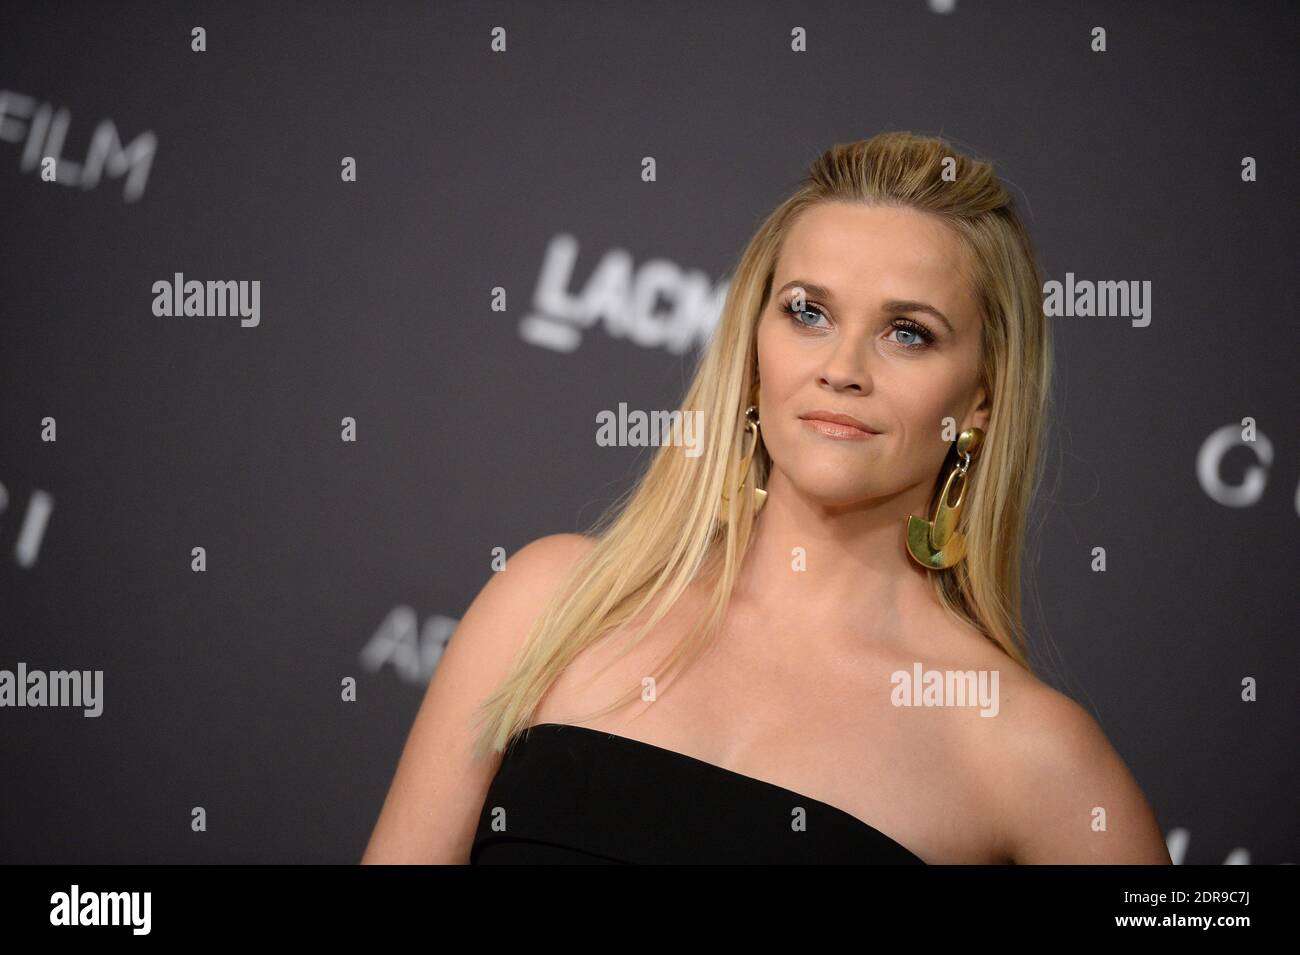 Reese Witherspoon assiste au gala Art+film de LACMA 2015 en l'honneur de James Turrell et Alejandro G Inarritu au LACMA le 7 novembre 2015 à Los Angeles, CA, Etats-Unis. Photo de Lionel Hahn/ABACAPRESS.COM Banque D'Images